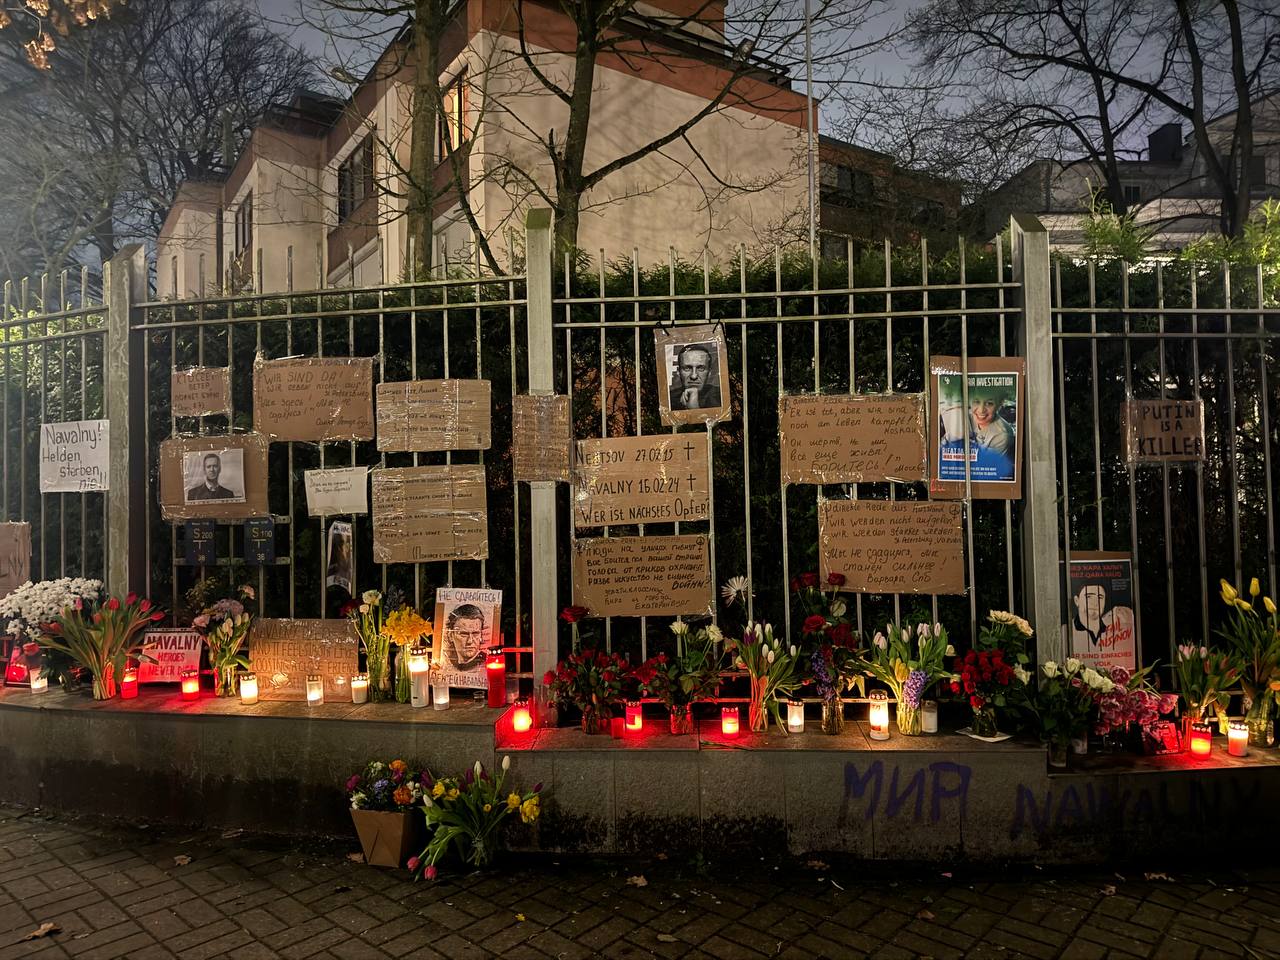 Trauer um Nawalny vor ehemaligem russischen Konsulat, am Zaun hängen Fotografien von Navalny, Briefe, es sind Blumen und Kerzen abgelegt